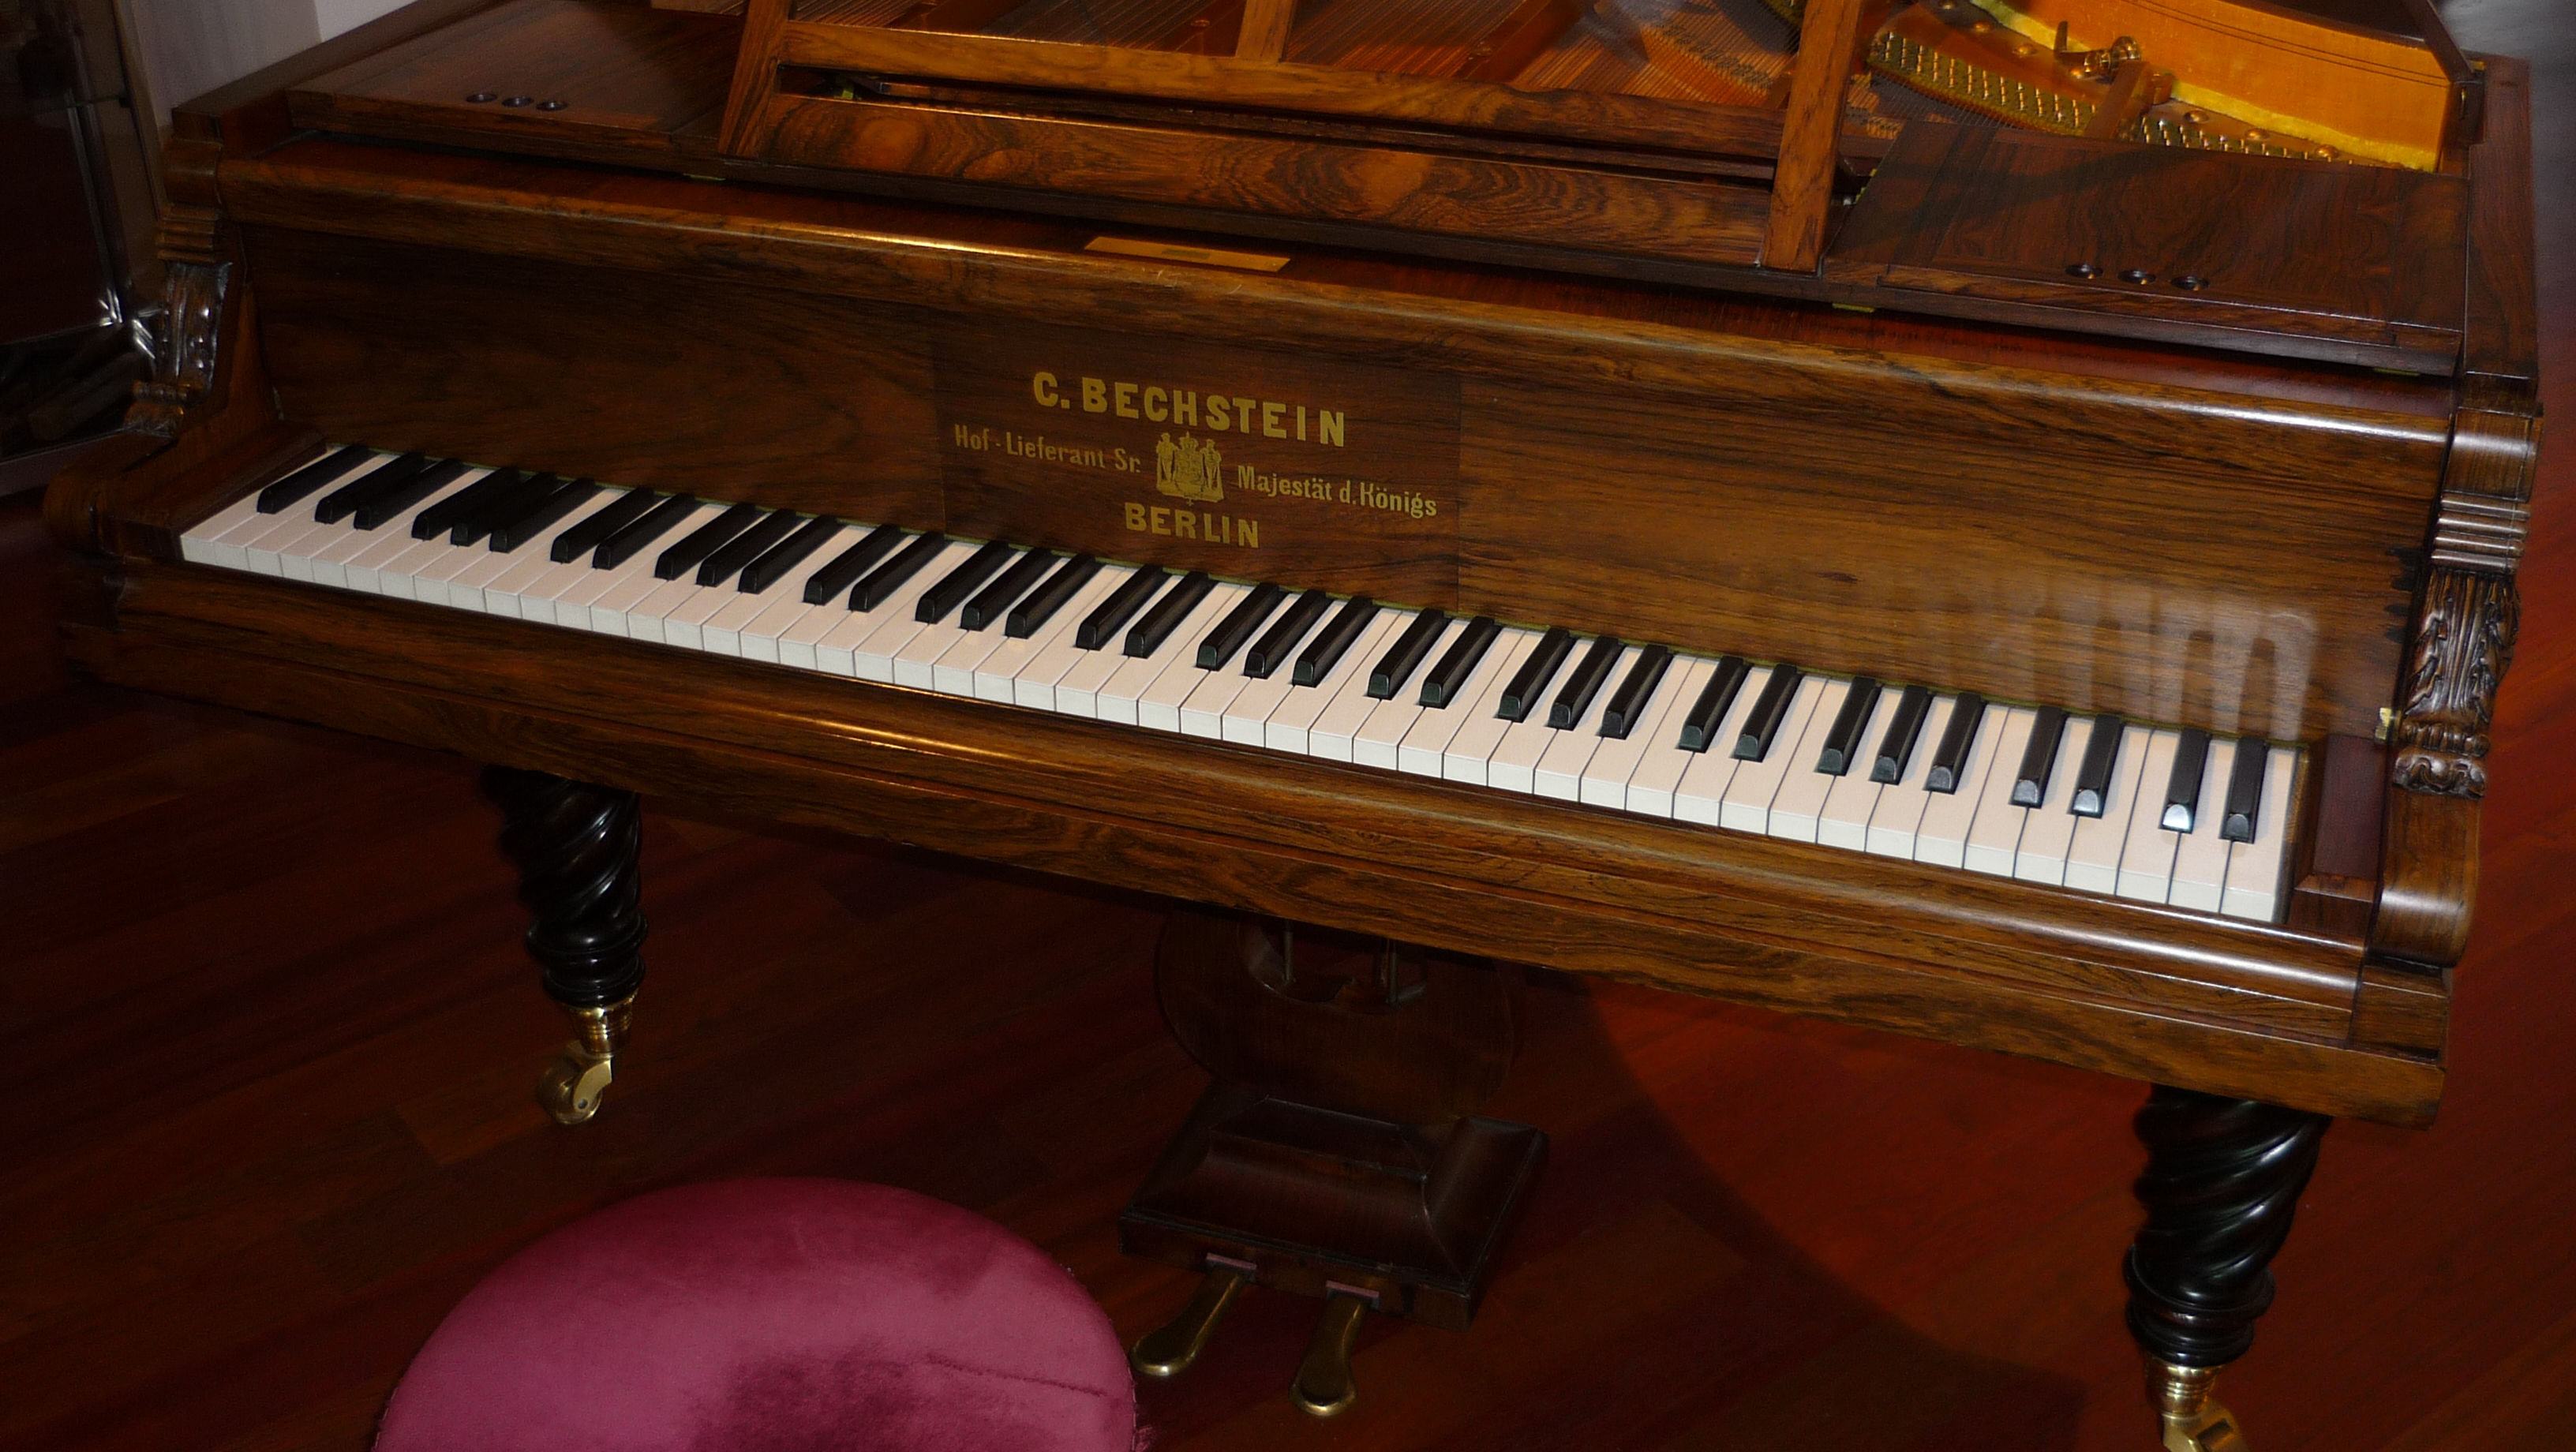 File:Bechstein 576 Grand piano (Franz Liszt) - Wooden frame.jpg ...